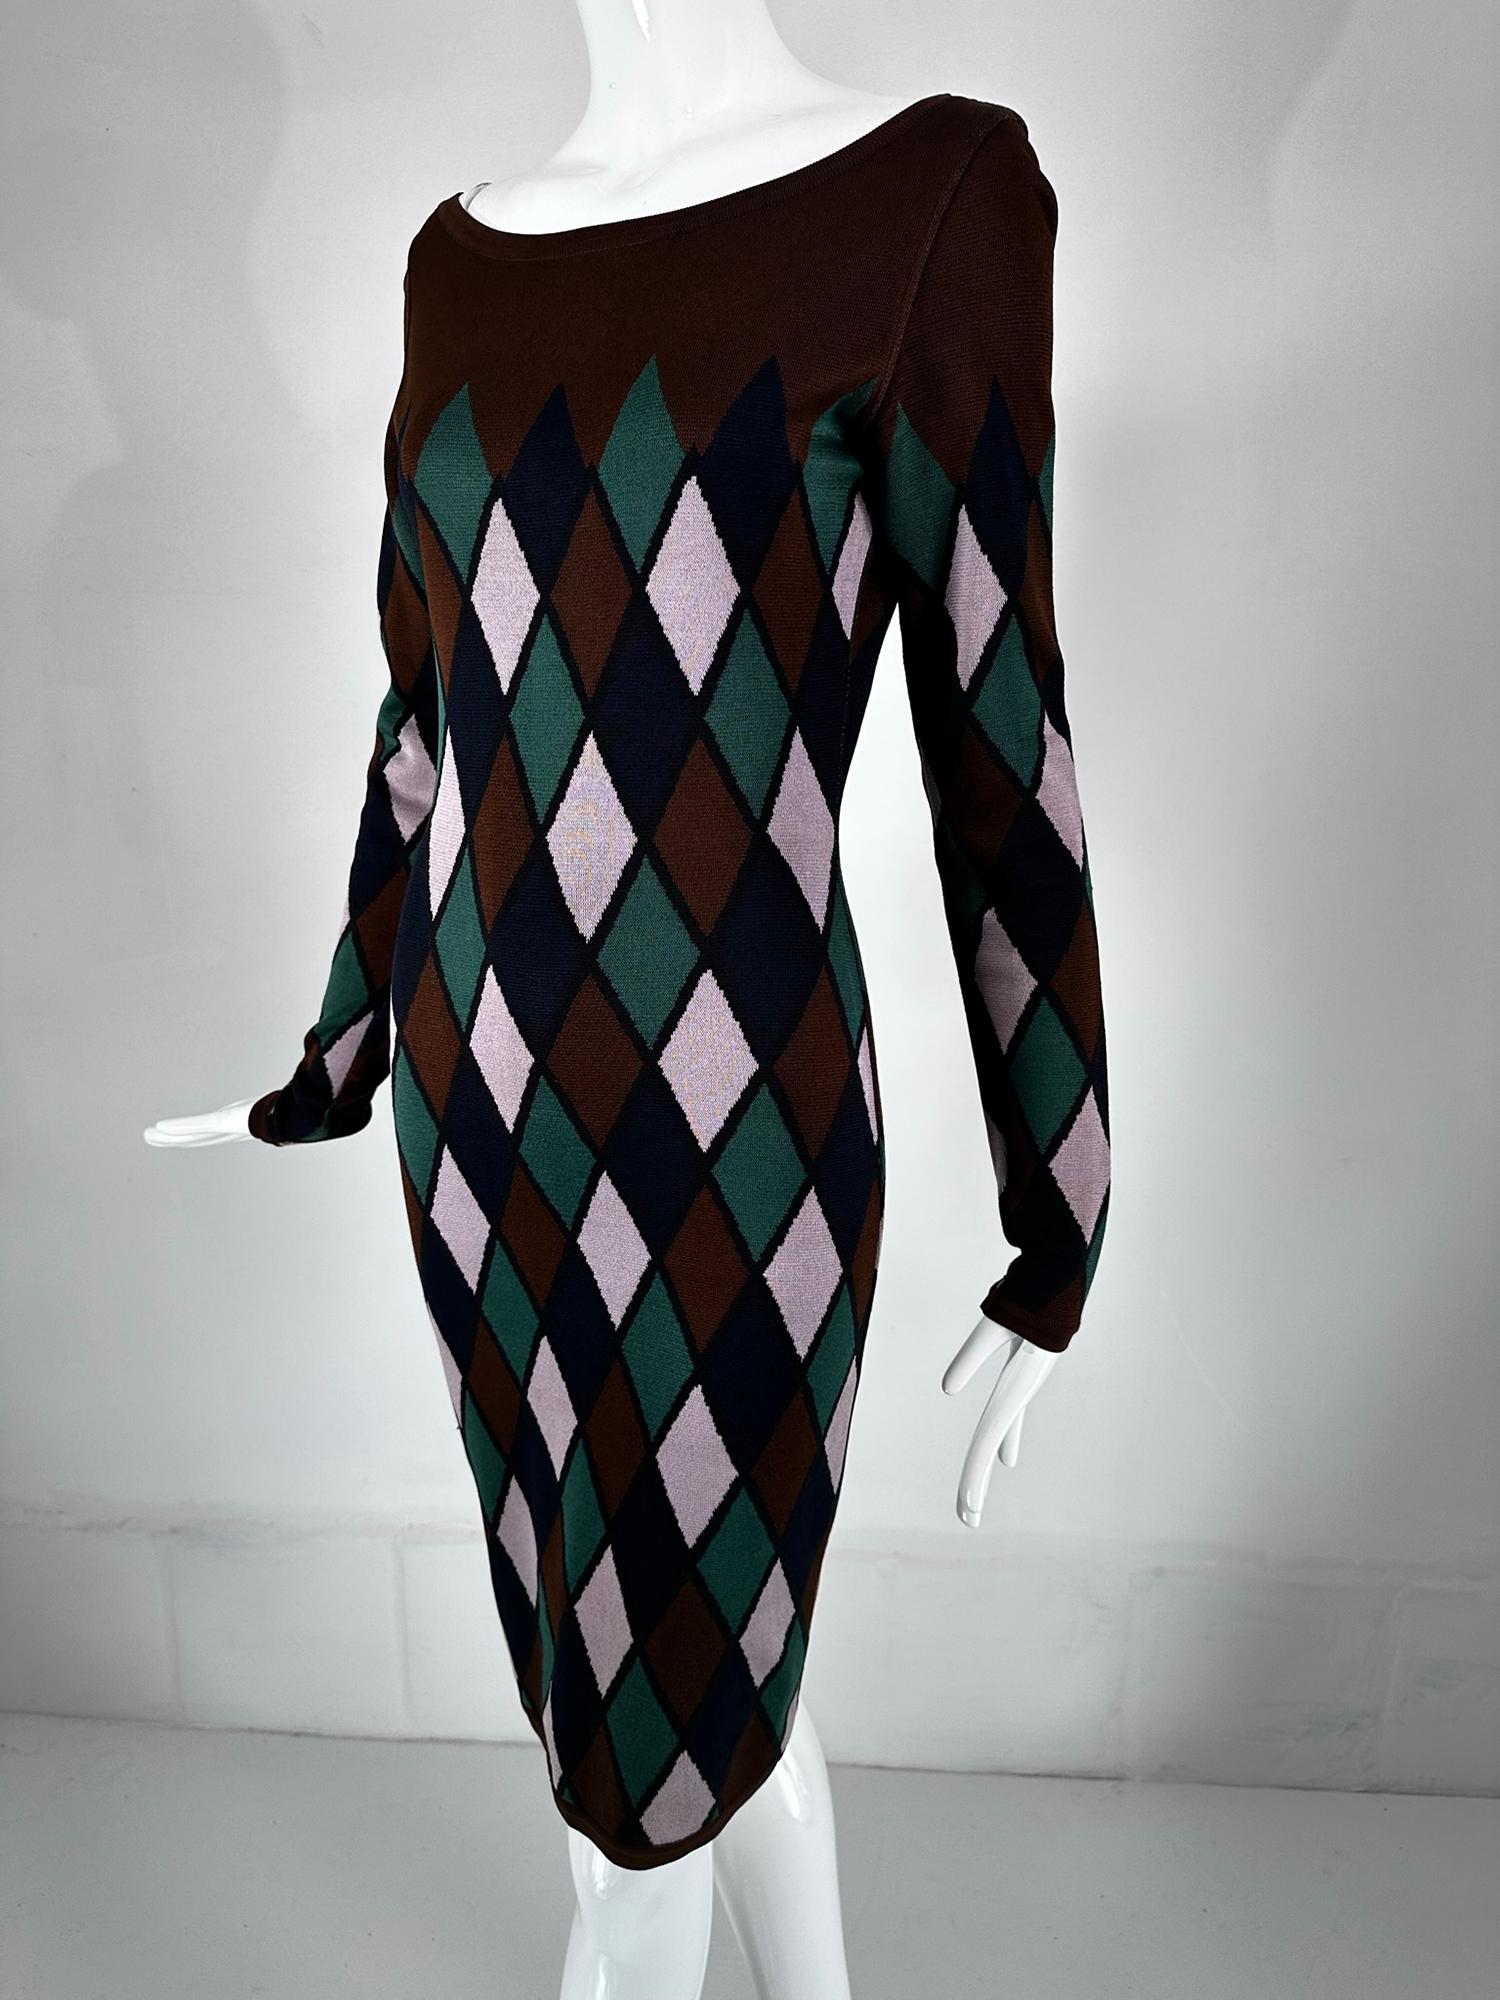 Azzedine Alaia rare automne 1992 robe body con en tricot argyle marron et vert marqué taille moyenne.  La robe en maille de rayonne soyeuse présente une large encolure ovale et de longues manches moulantes. Le corps de la robe est étroit et